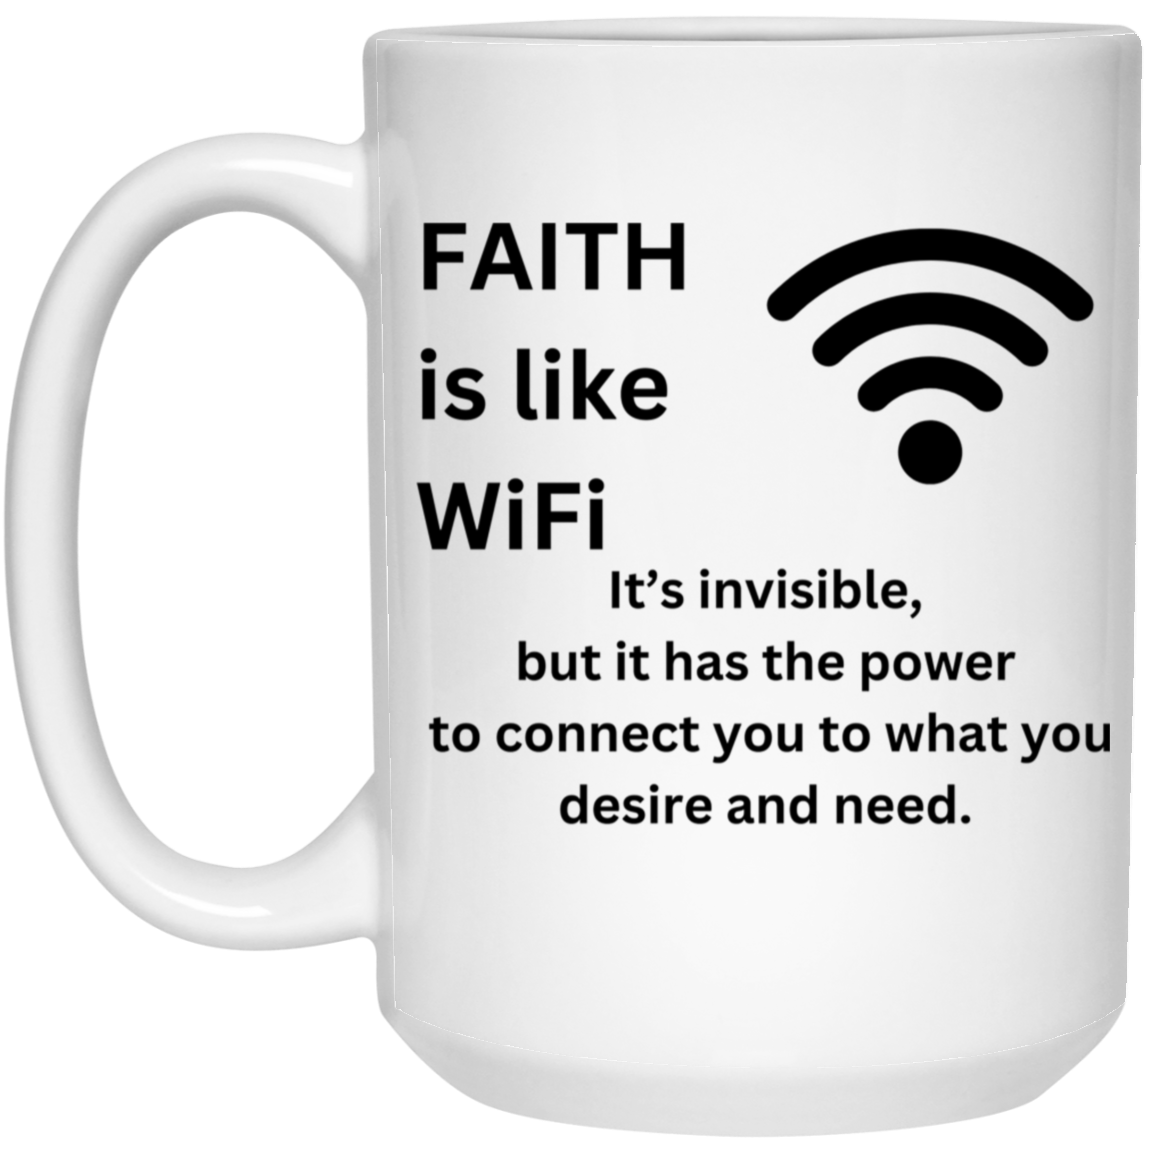 FAITH is like WiFi